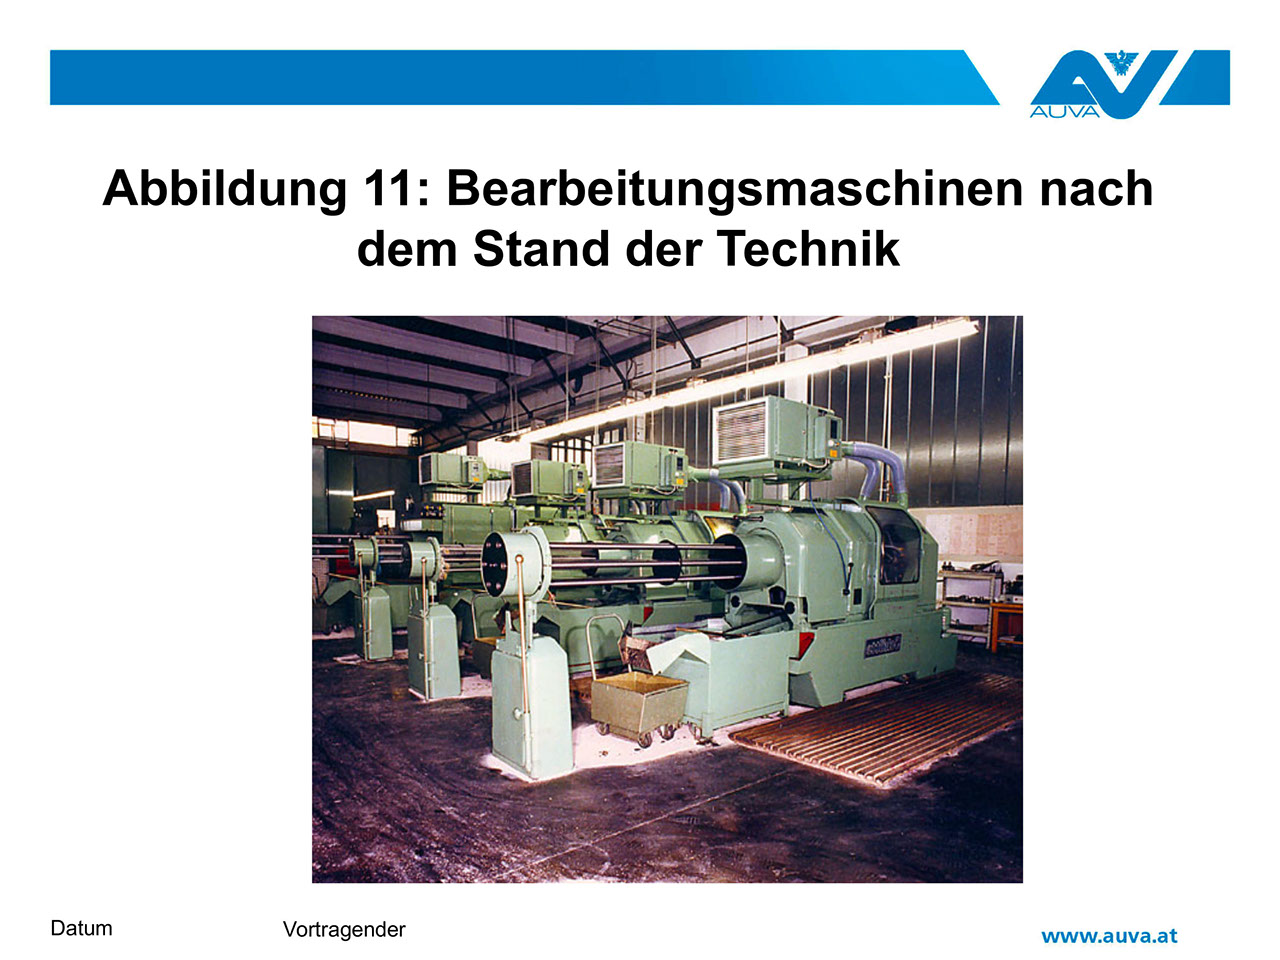 Abbildung 11: Bearbeitungsmaschinen nach dem Stand der Technik